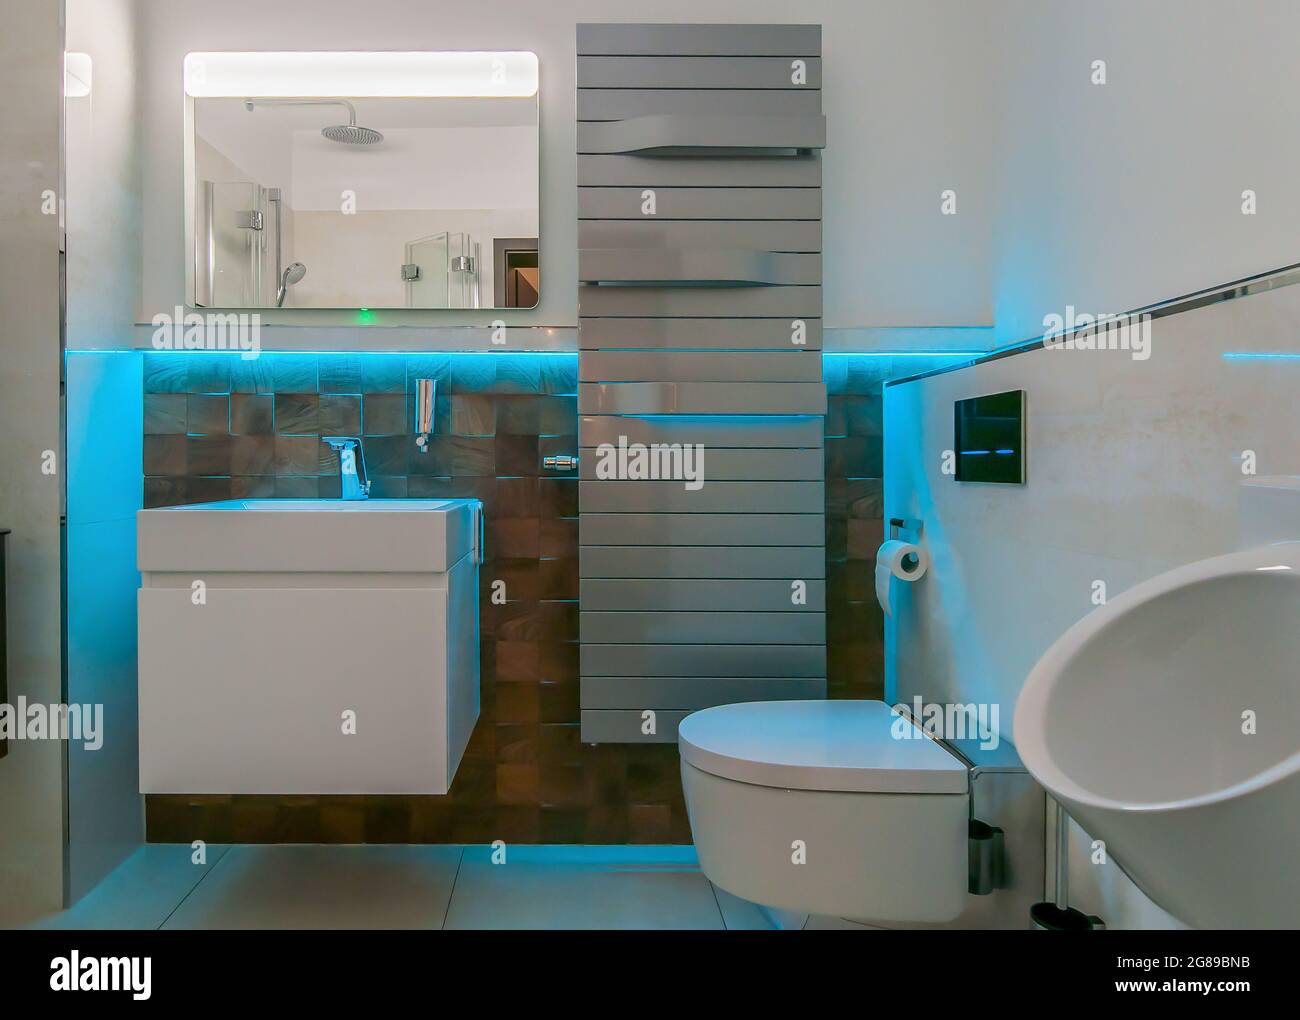 Blick in ein Badezimmer mit farbiger LED-Beleuchtung. Hinter dem Waschbecken befinden sich außergewöhnliche Fliesen mit Holz-Optik Stockfoto